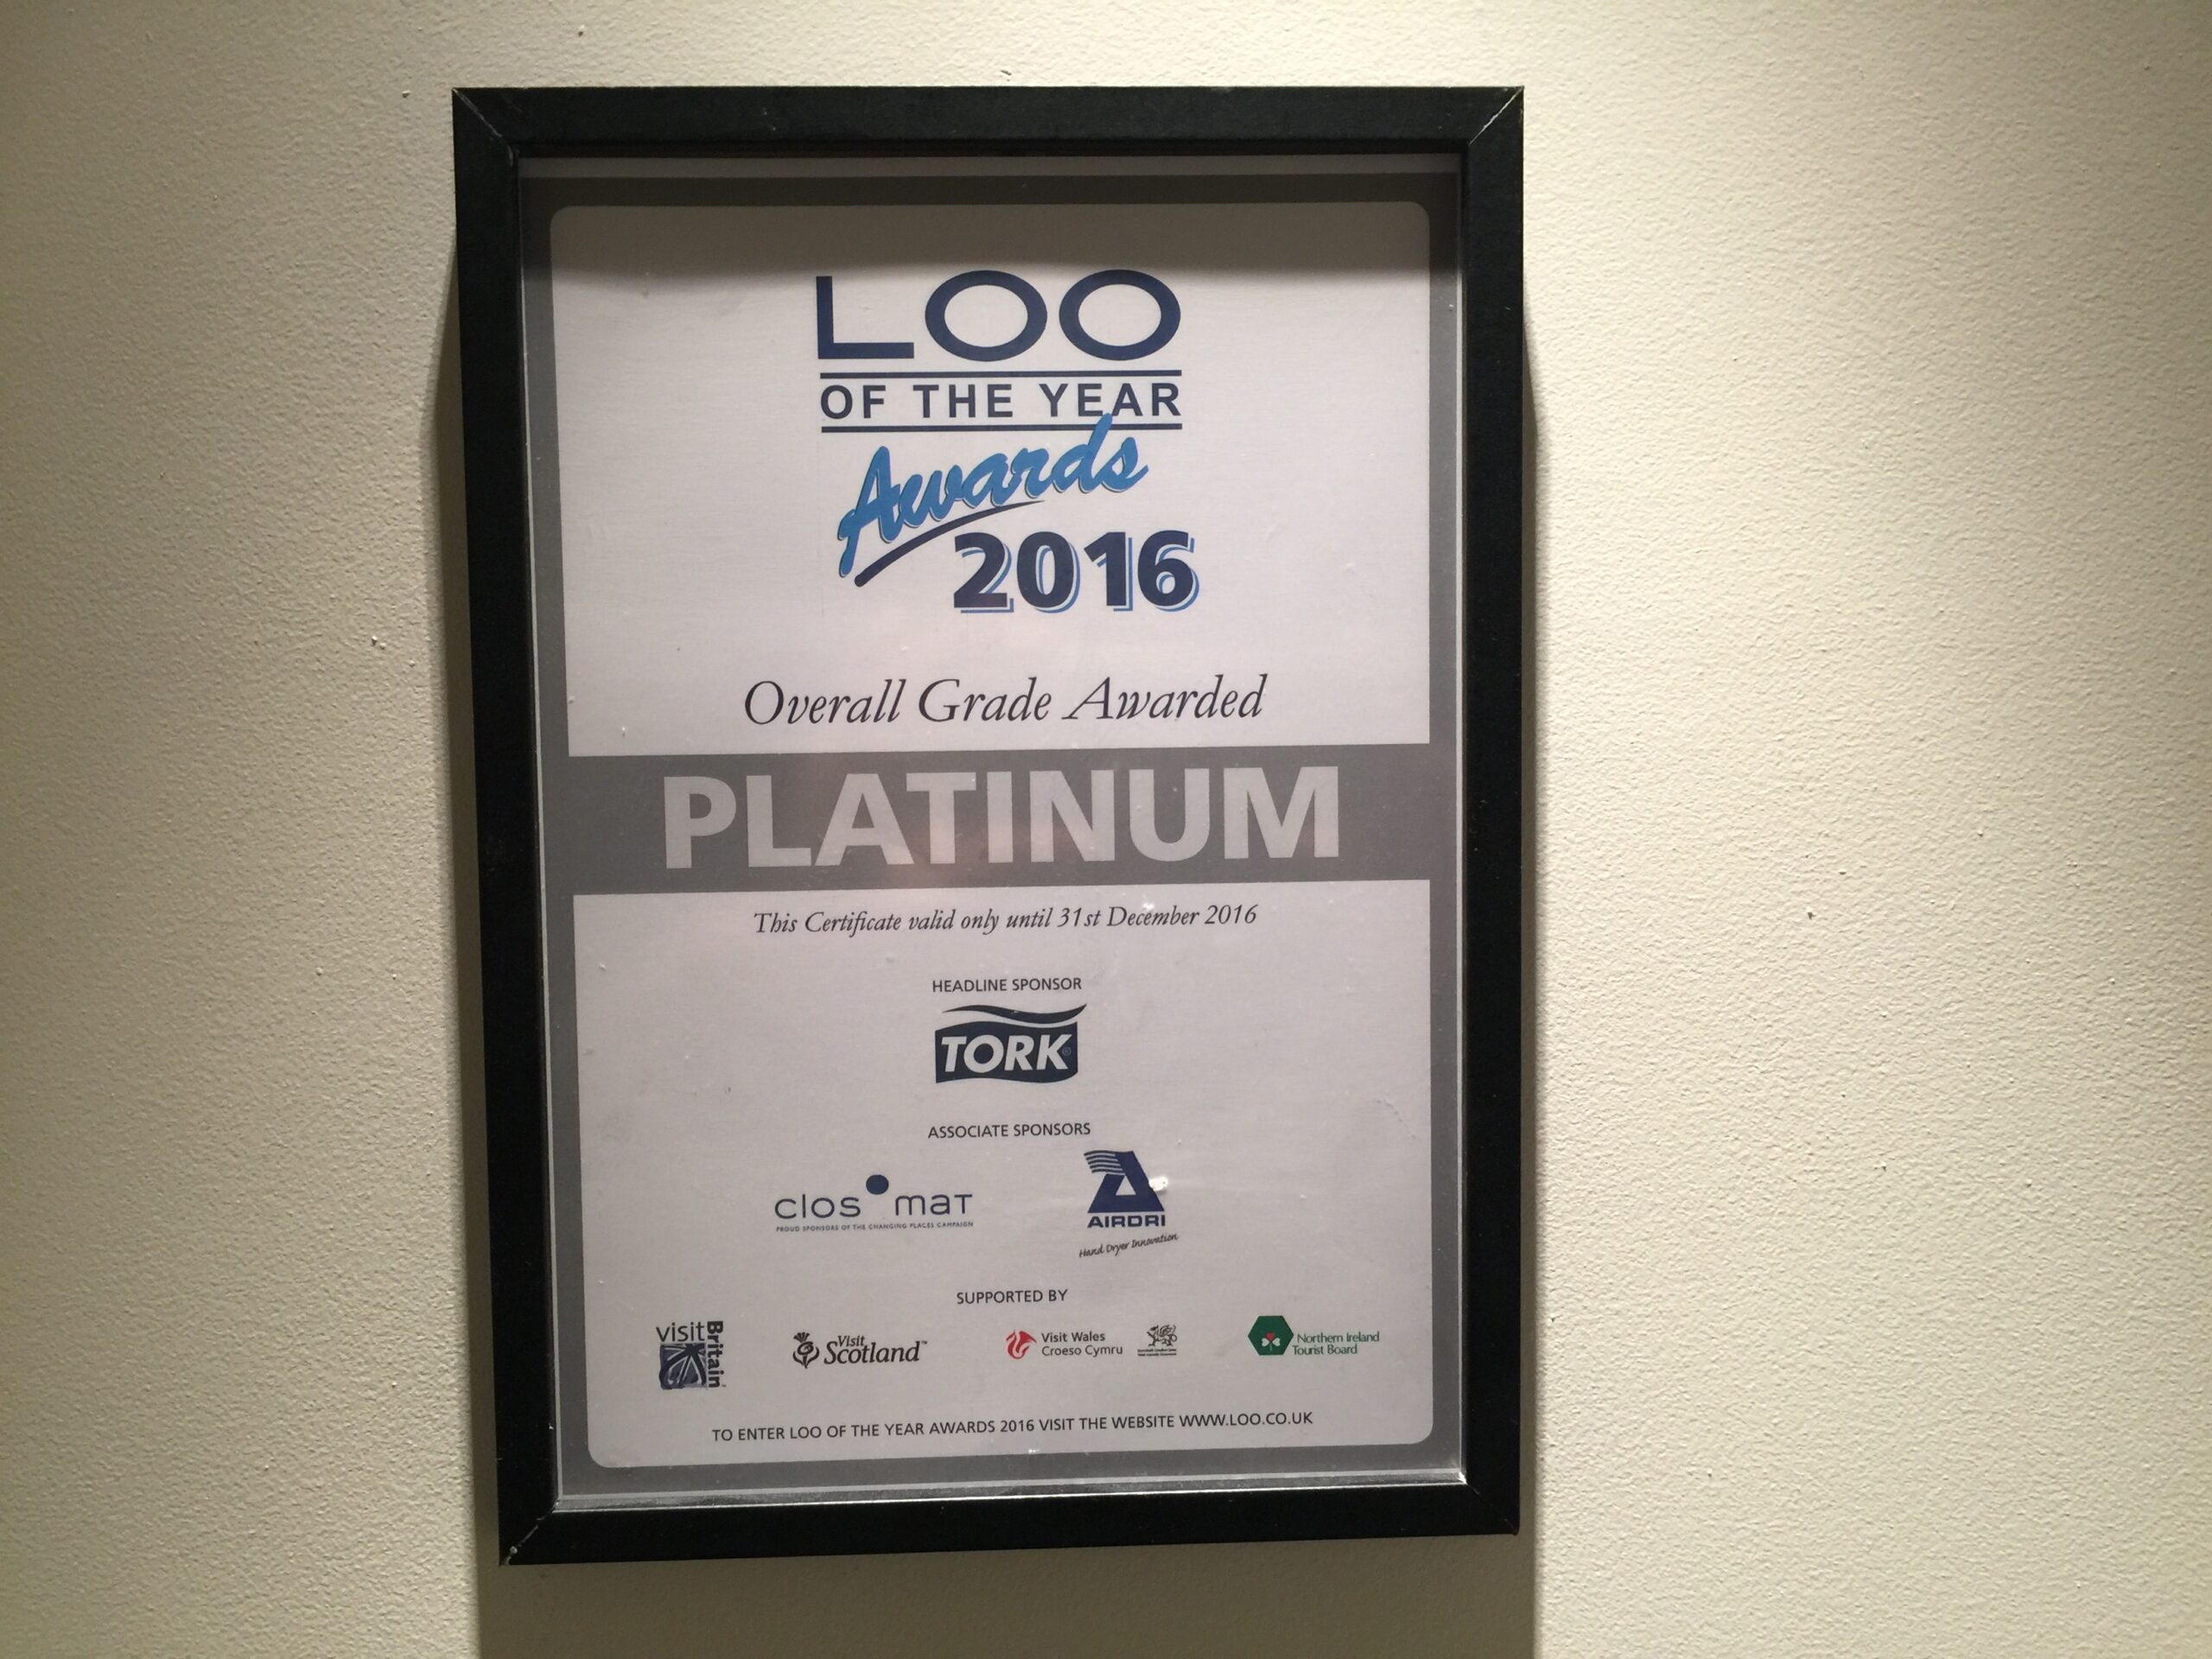 Loo_awards_2016_Vapiano.JPG